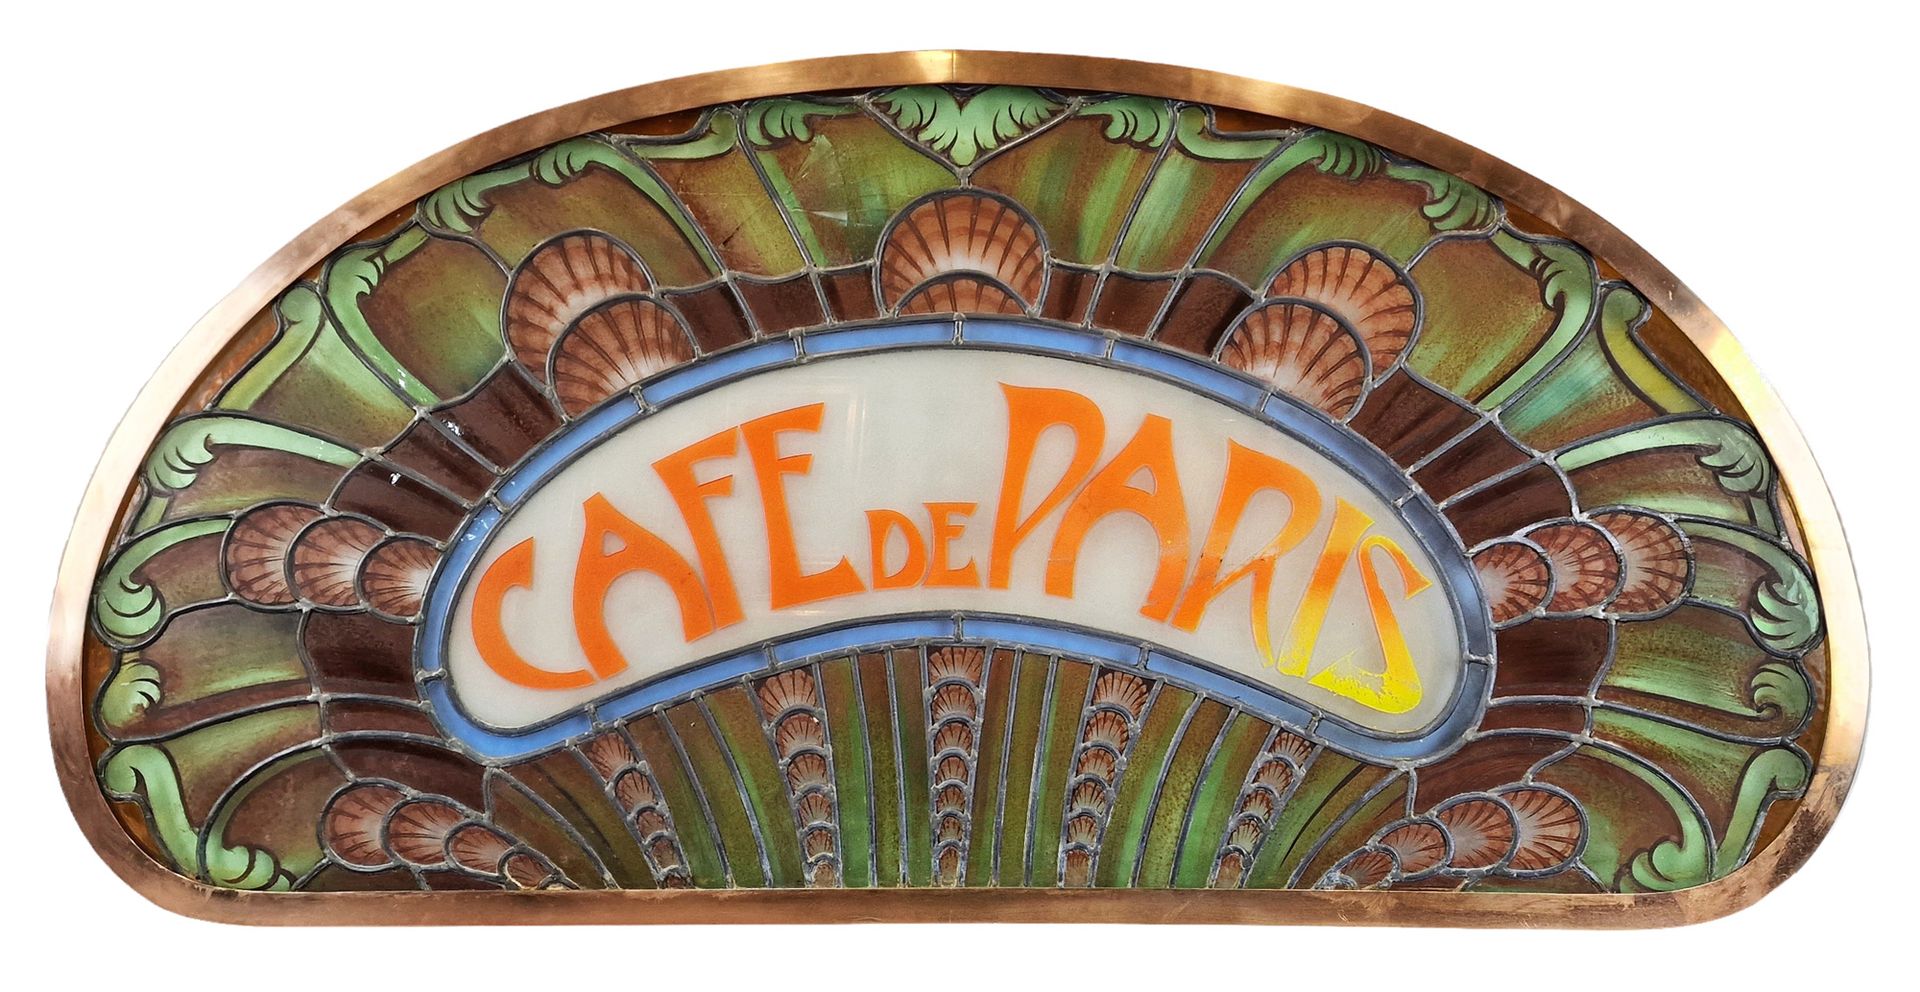 CAFE DE PARIS CAFE DE PARIS

Importante vetrata in stile Art Nouveau

----------&hellip;